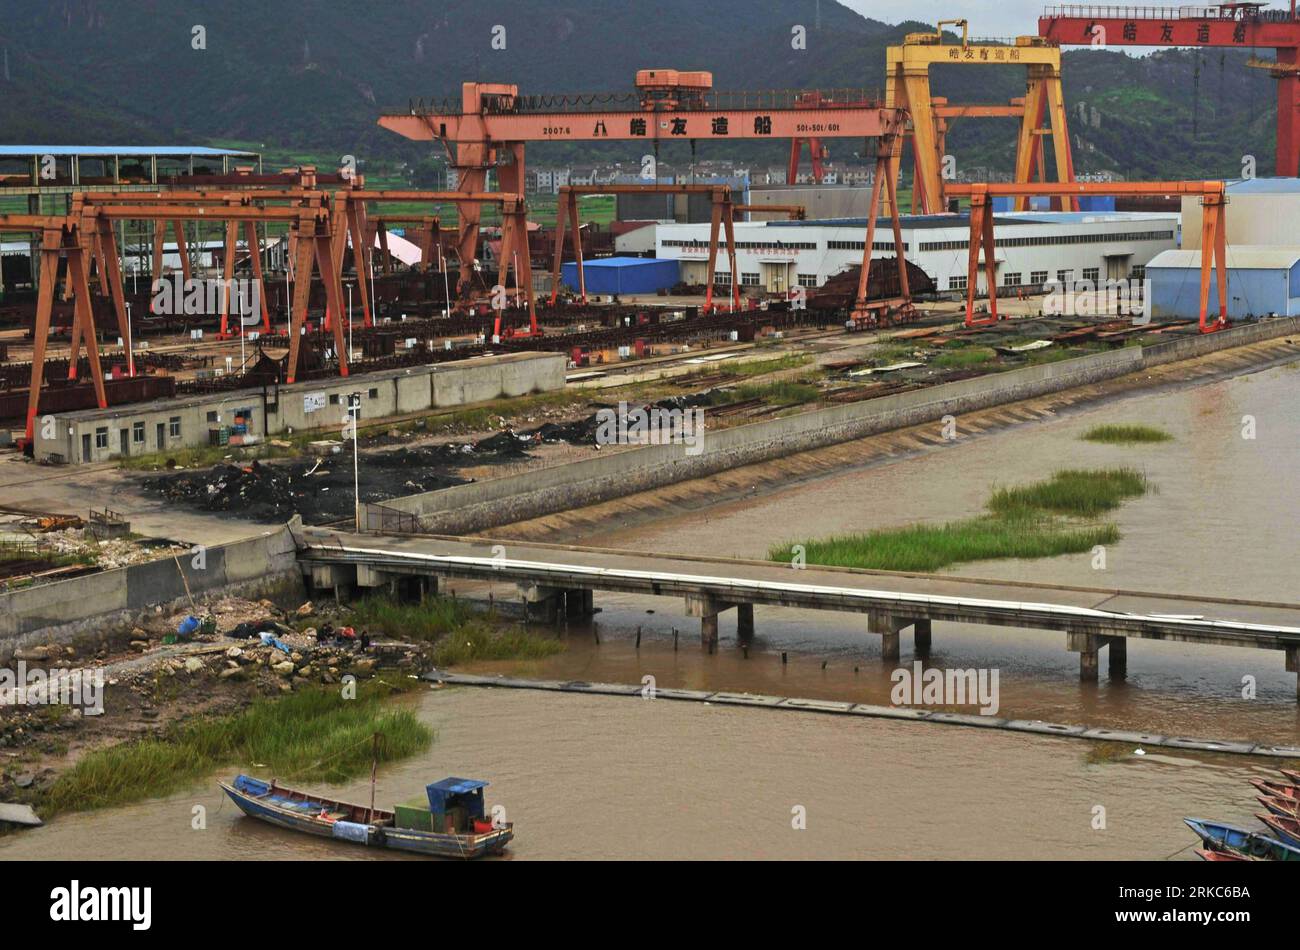 Bildnummer : 54678836 Datum : 29.09.2010 Copyright : imago/Xinhua (101126) -- TAIZHOU, 26 novembre 2010 (Xinhua) -- des grues de construction navale inactives sont vues dans un chantier naval privé dans le comté de Sanmen de Taizhou, province de Zhejiang dans l'est de la Chine, 29 septembre 2010. En plus de 40 ans, l'océan vaste et profond a donné à Li Changxian tout sauf les soucis. Mais depuis le début de la crise financière mondiale il y a deux ans, le milliardaire de 44 ans est tombé dans le blues. Debout dans le chantier naval autrefois animé de Hongda qu'il dirigeait à Taizhou, Li Changxian posa sa main sur la coque rouillée d'un navire inachevé Banque D'Images